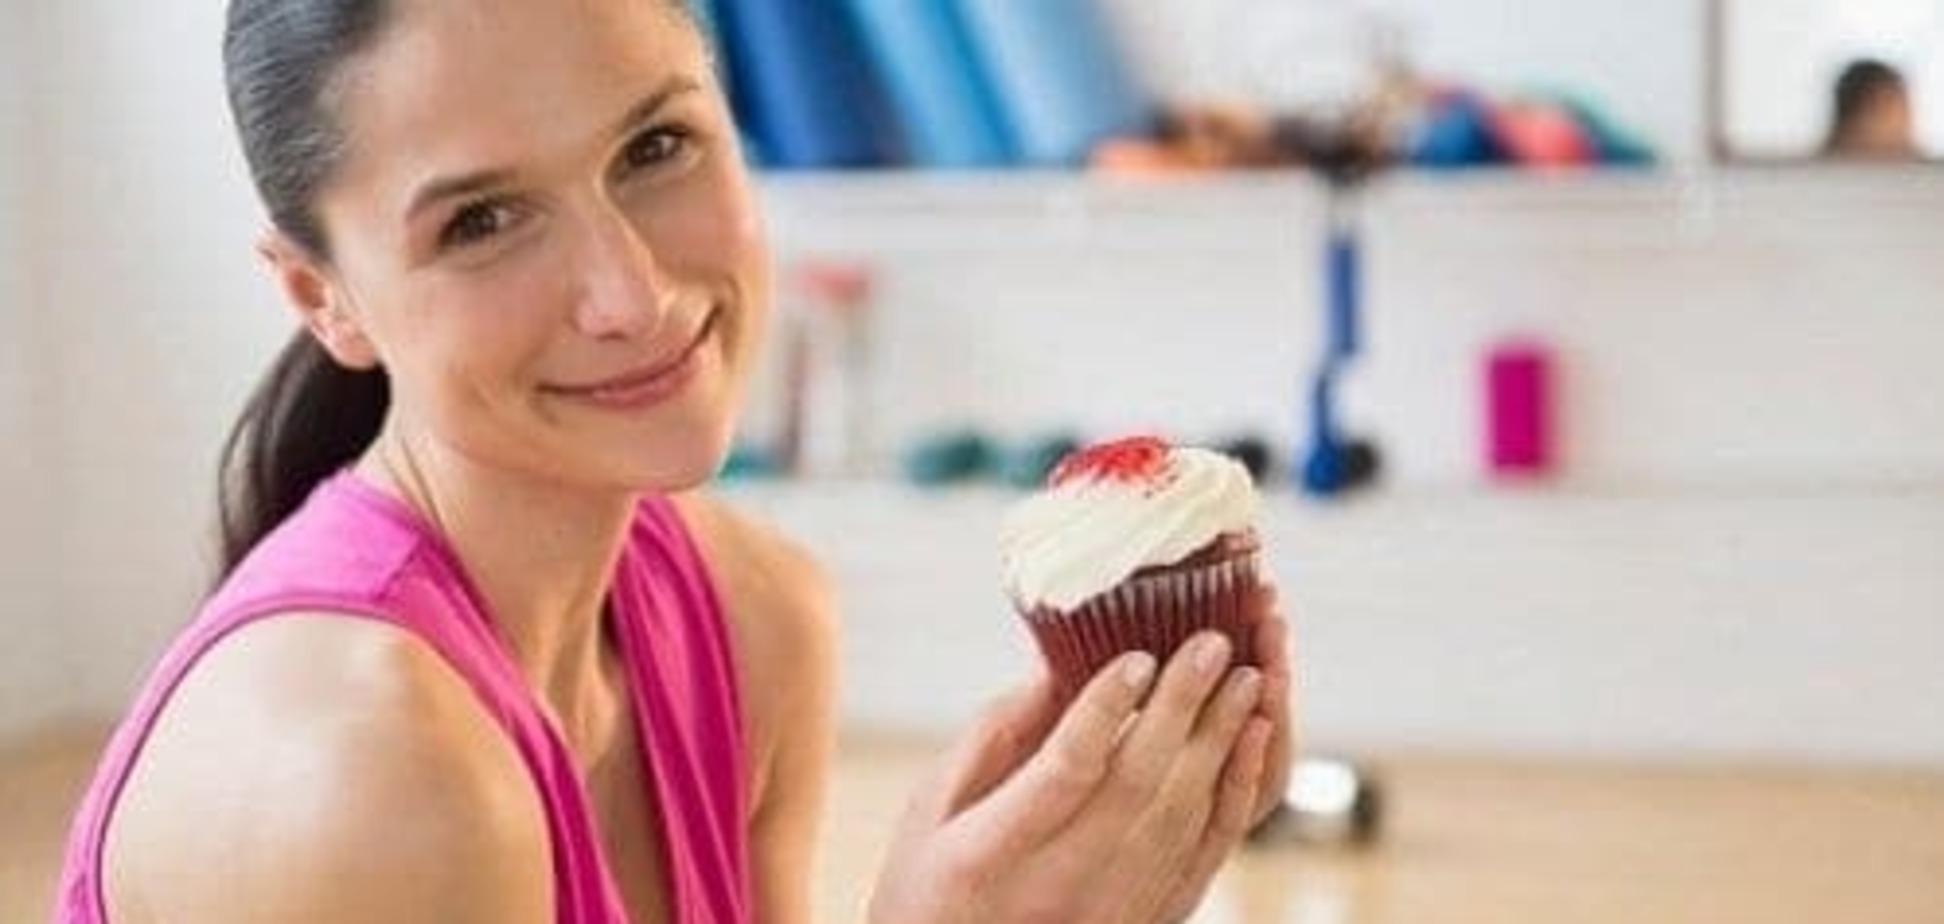 Эксперты назвали 7 причин, почему девушки не могут похудеть на диетах